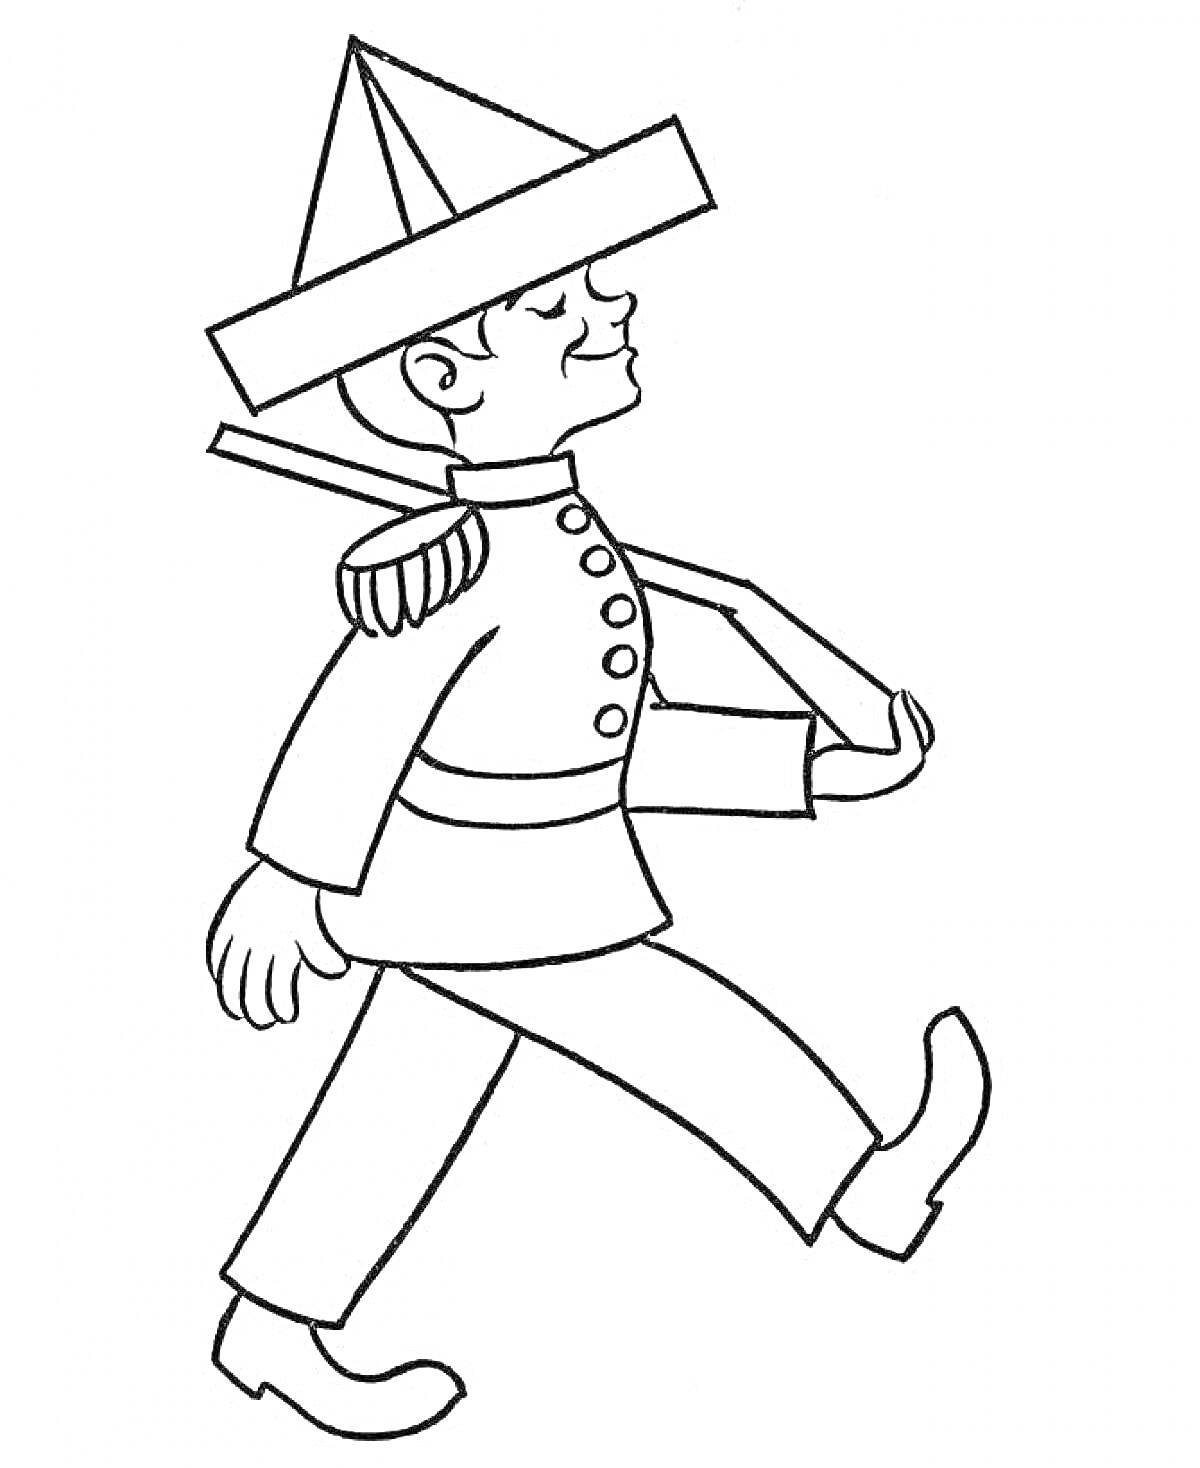 Раскраска Солдатик в треуголке с наплечником и ремнем, марширующий с палкой